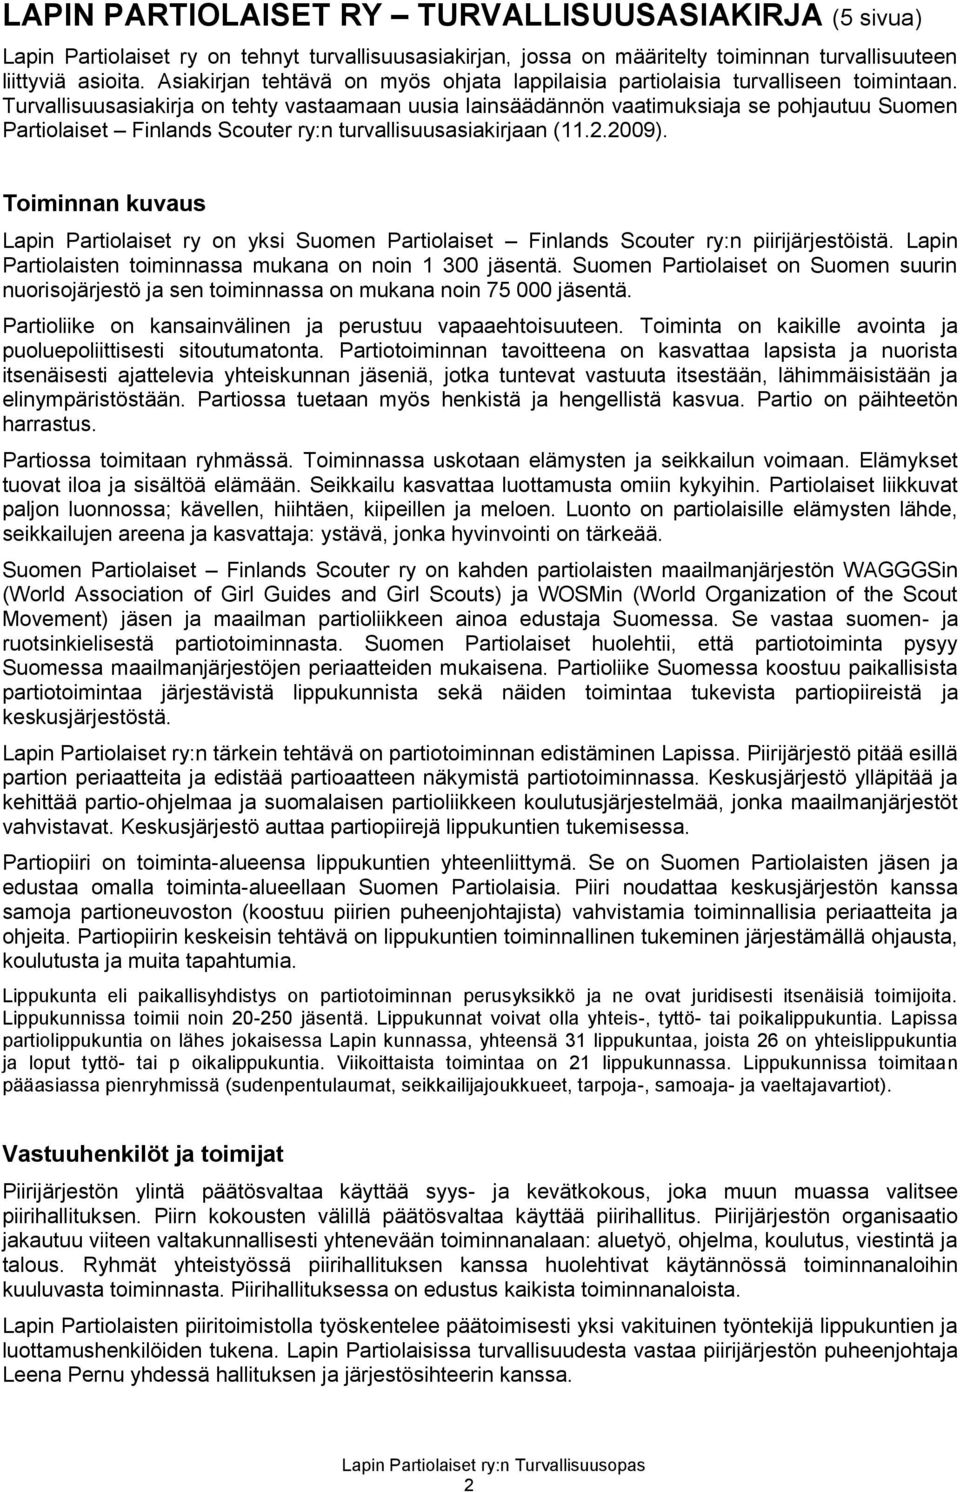 Turvallisuusasiakirja on tehty vastaamaan uusia lainsäädännön vaatimuksiaja se pohjautuu Suomen Partiolaiset Finlands Scouter ry:n turvallisuusasiakirjaan (11.2.2009).